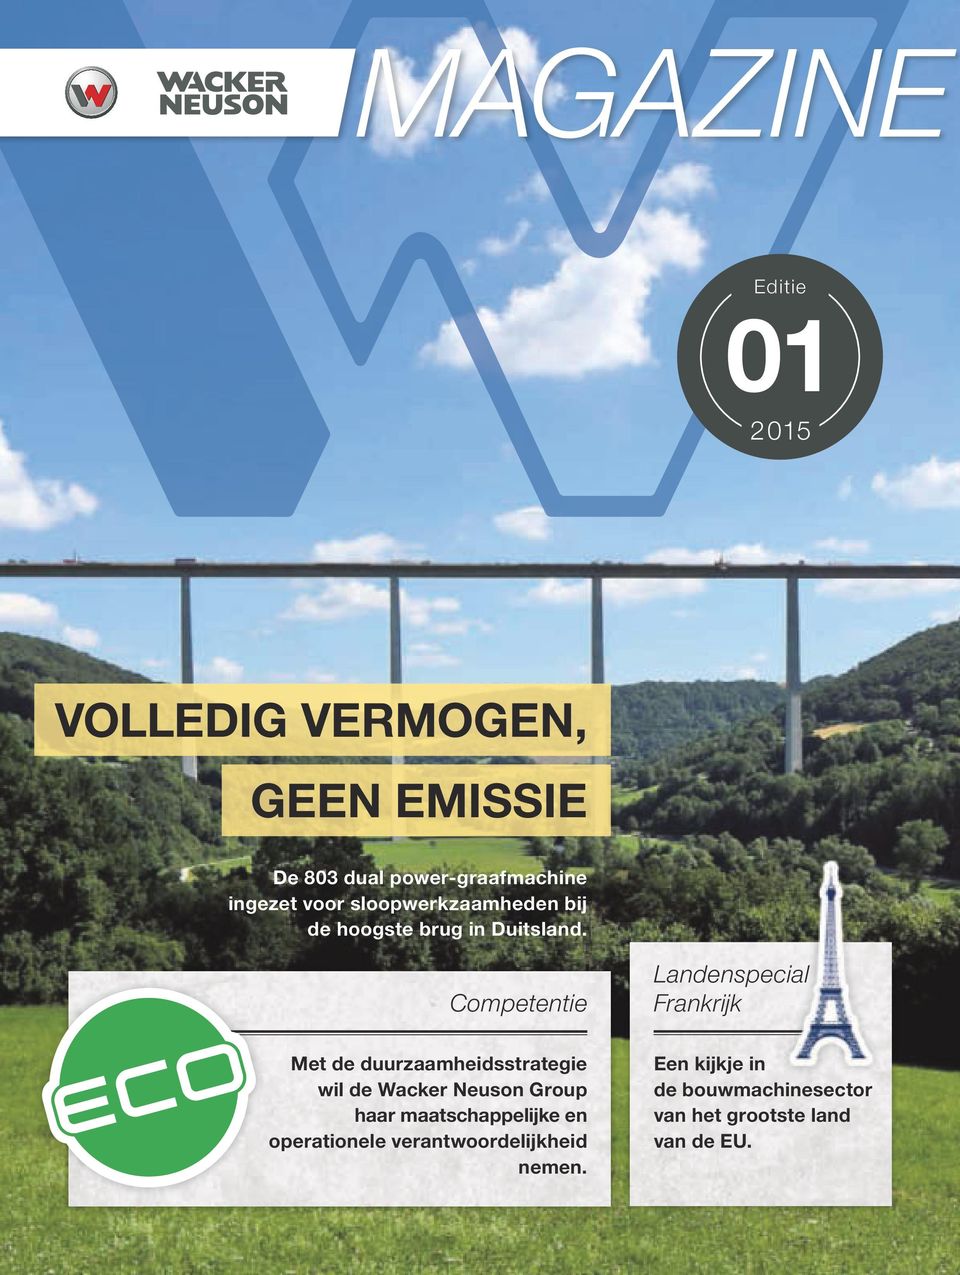 Competentie Landenspecial Frankrijk Met de duurzaamheidsstrategie wil de Wacker Neuson Group